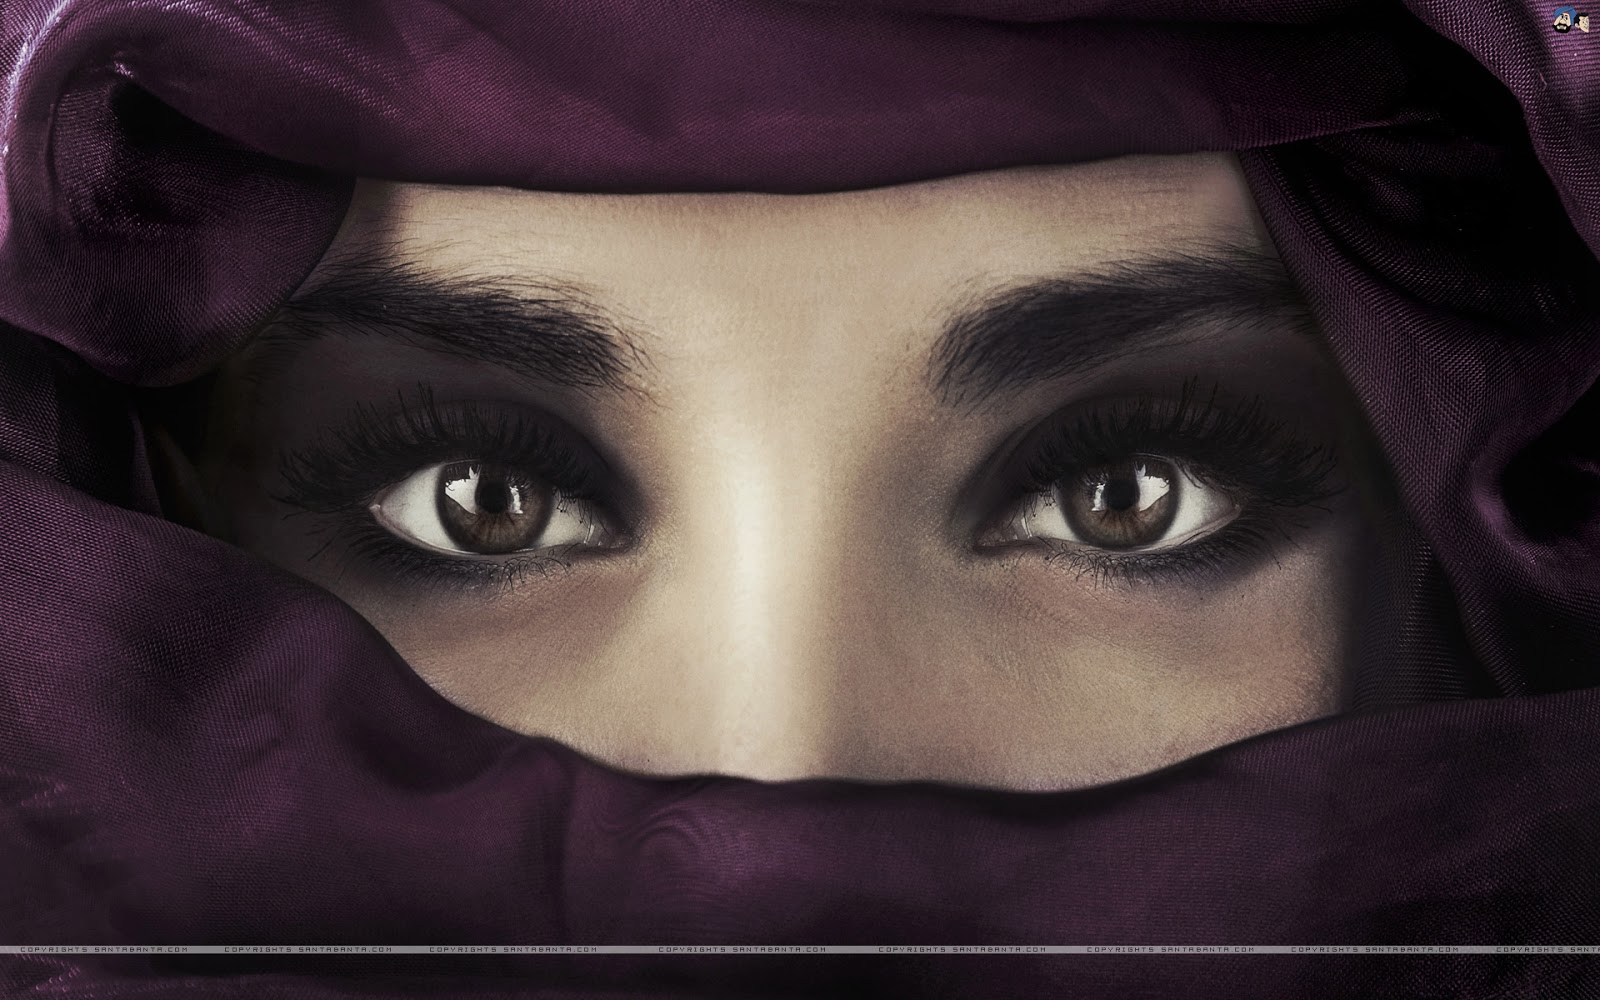 Koleksi Wallpaper Wanita Muslimah Bercadar  Fauzi Blog